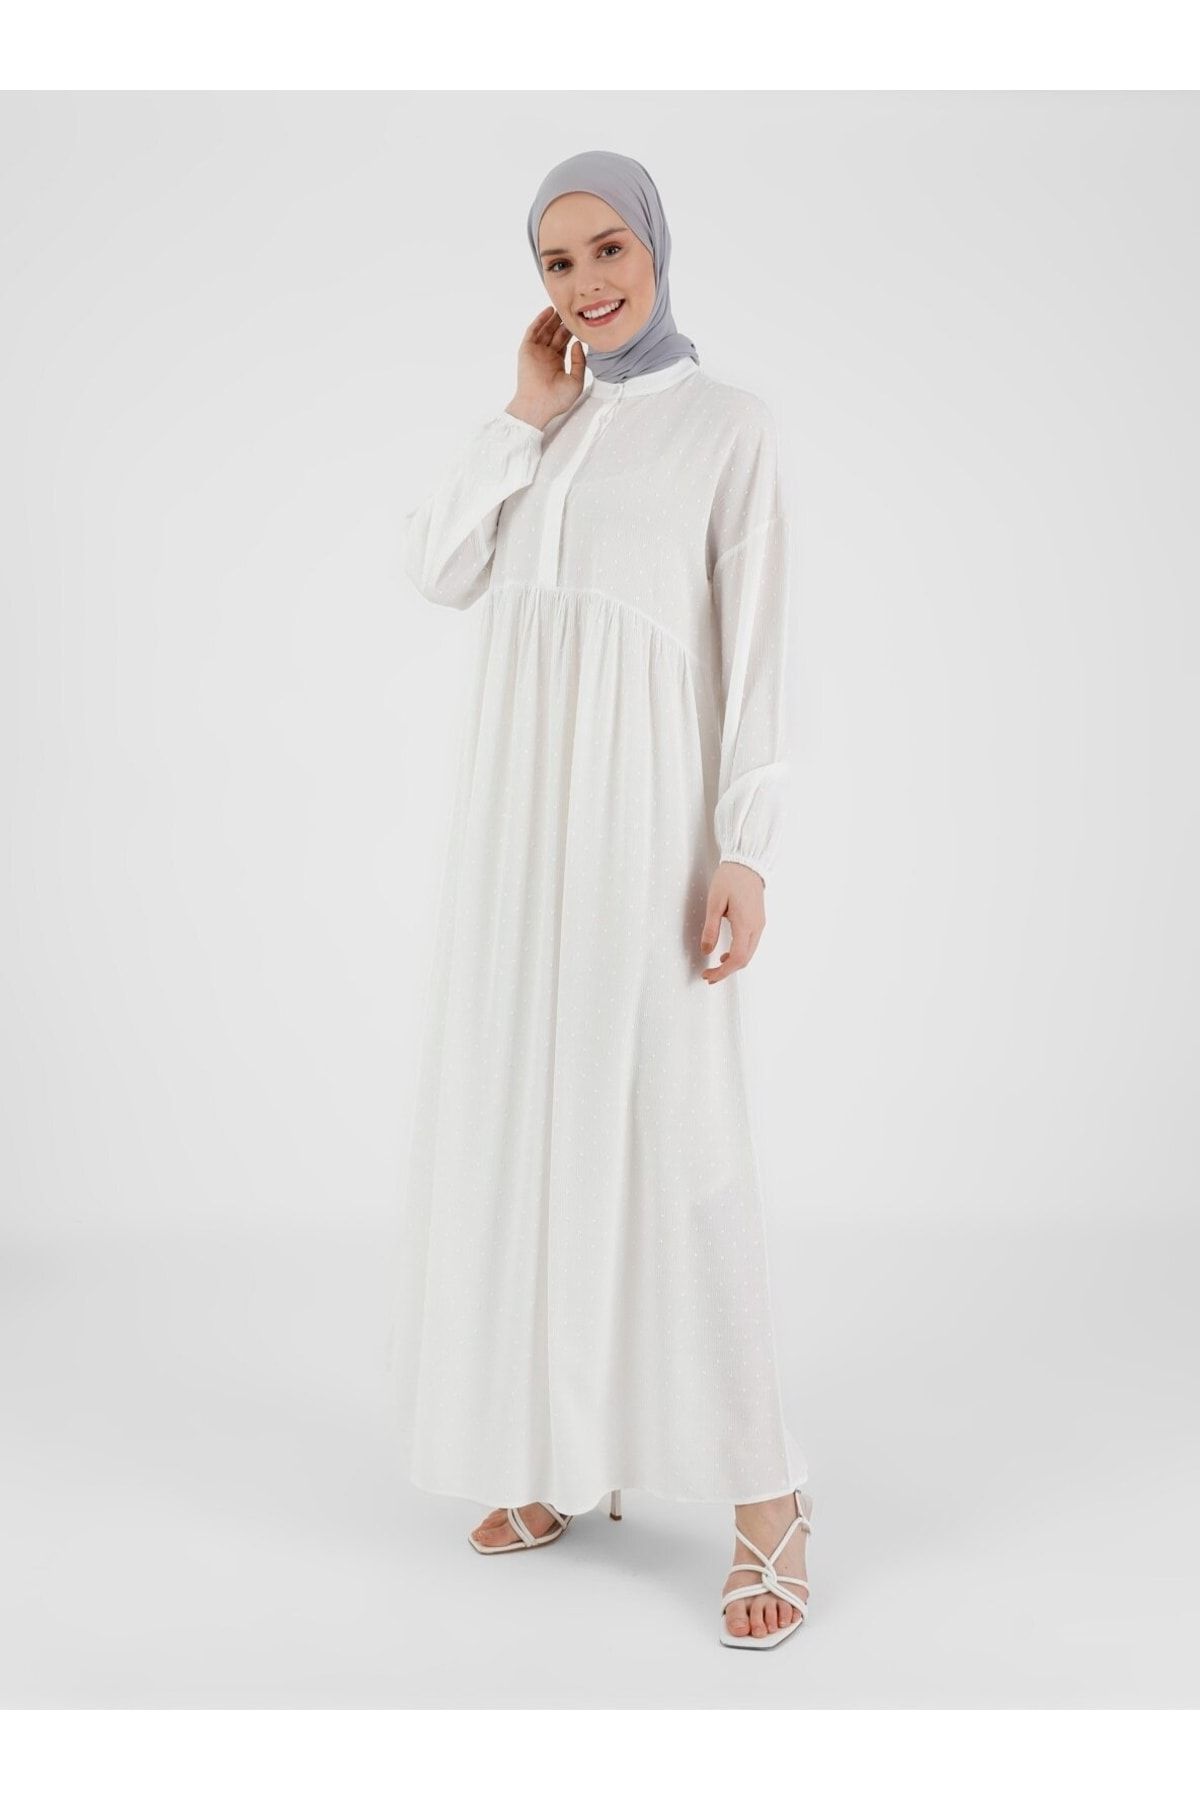 Refka Nopeli Kumaştan Kolları Lastikli Astarsız Salaş Elbise Beyaz Casual